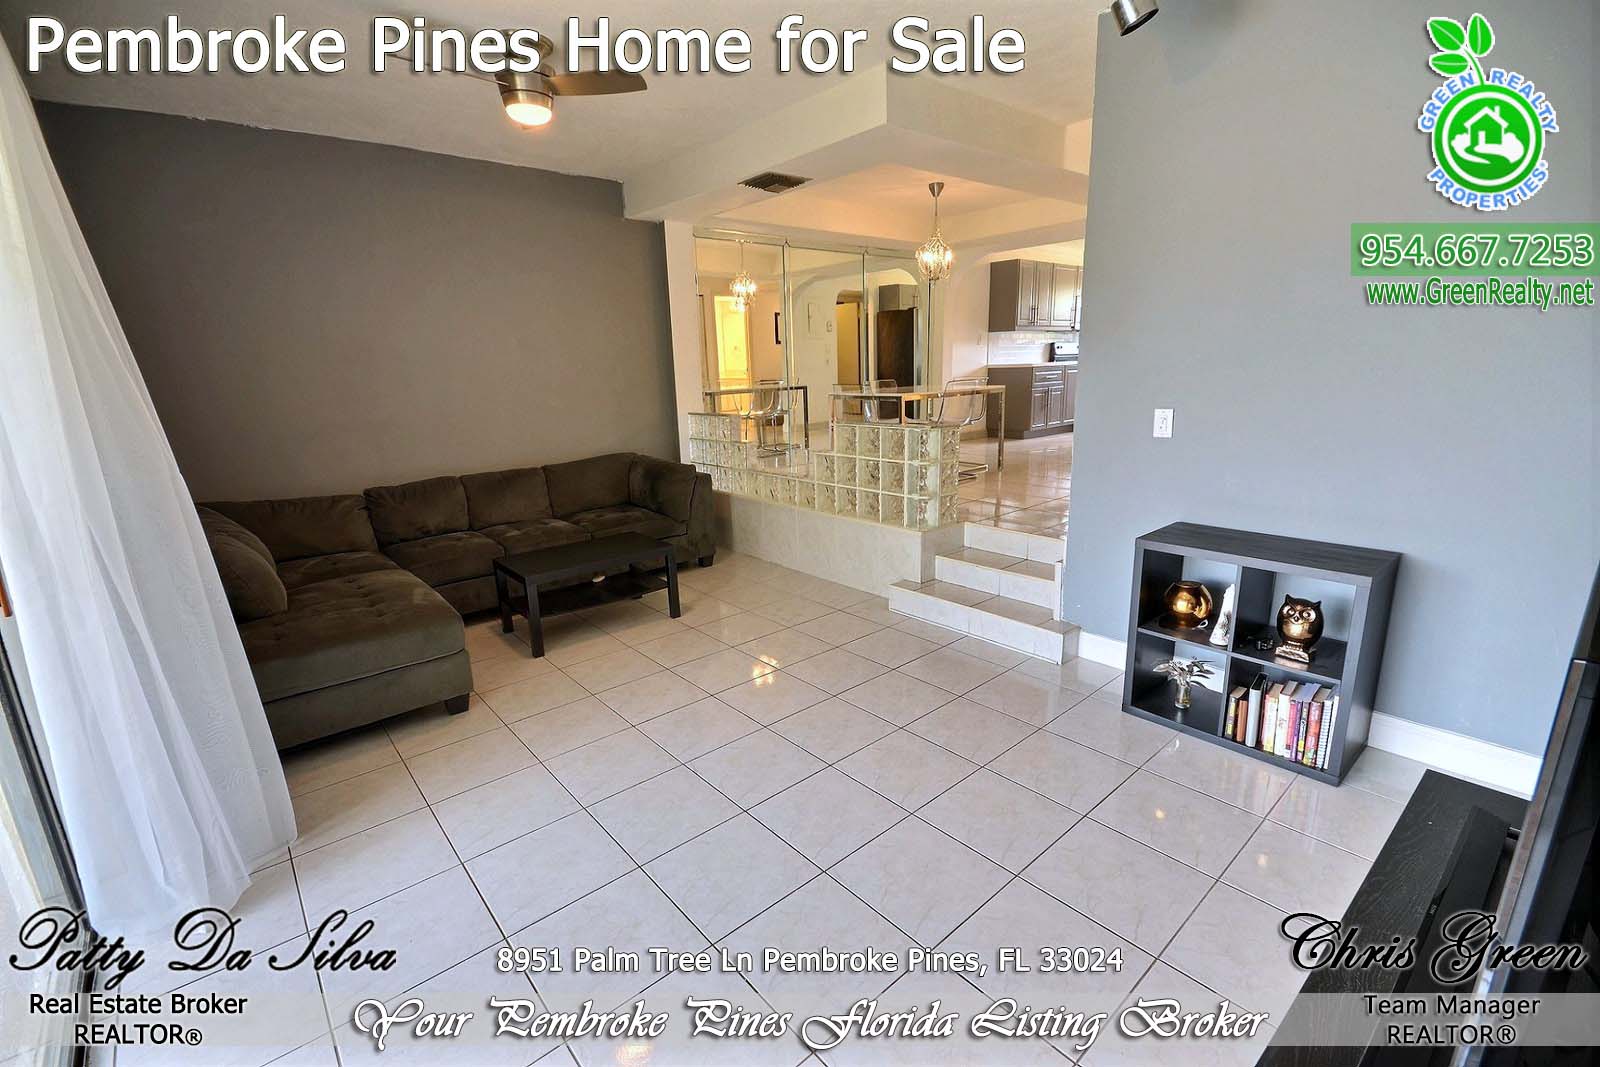 Pembroke Pines Homes For Sale - 8951 Palm Tree Lane (8)